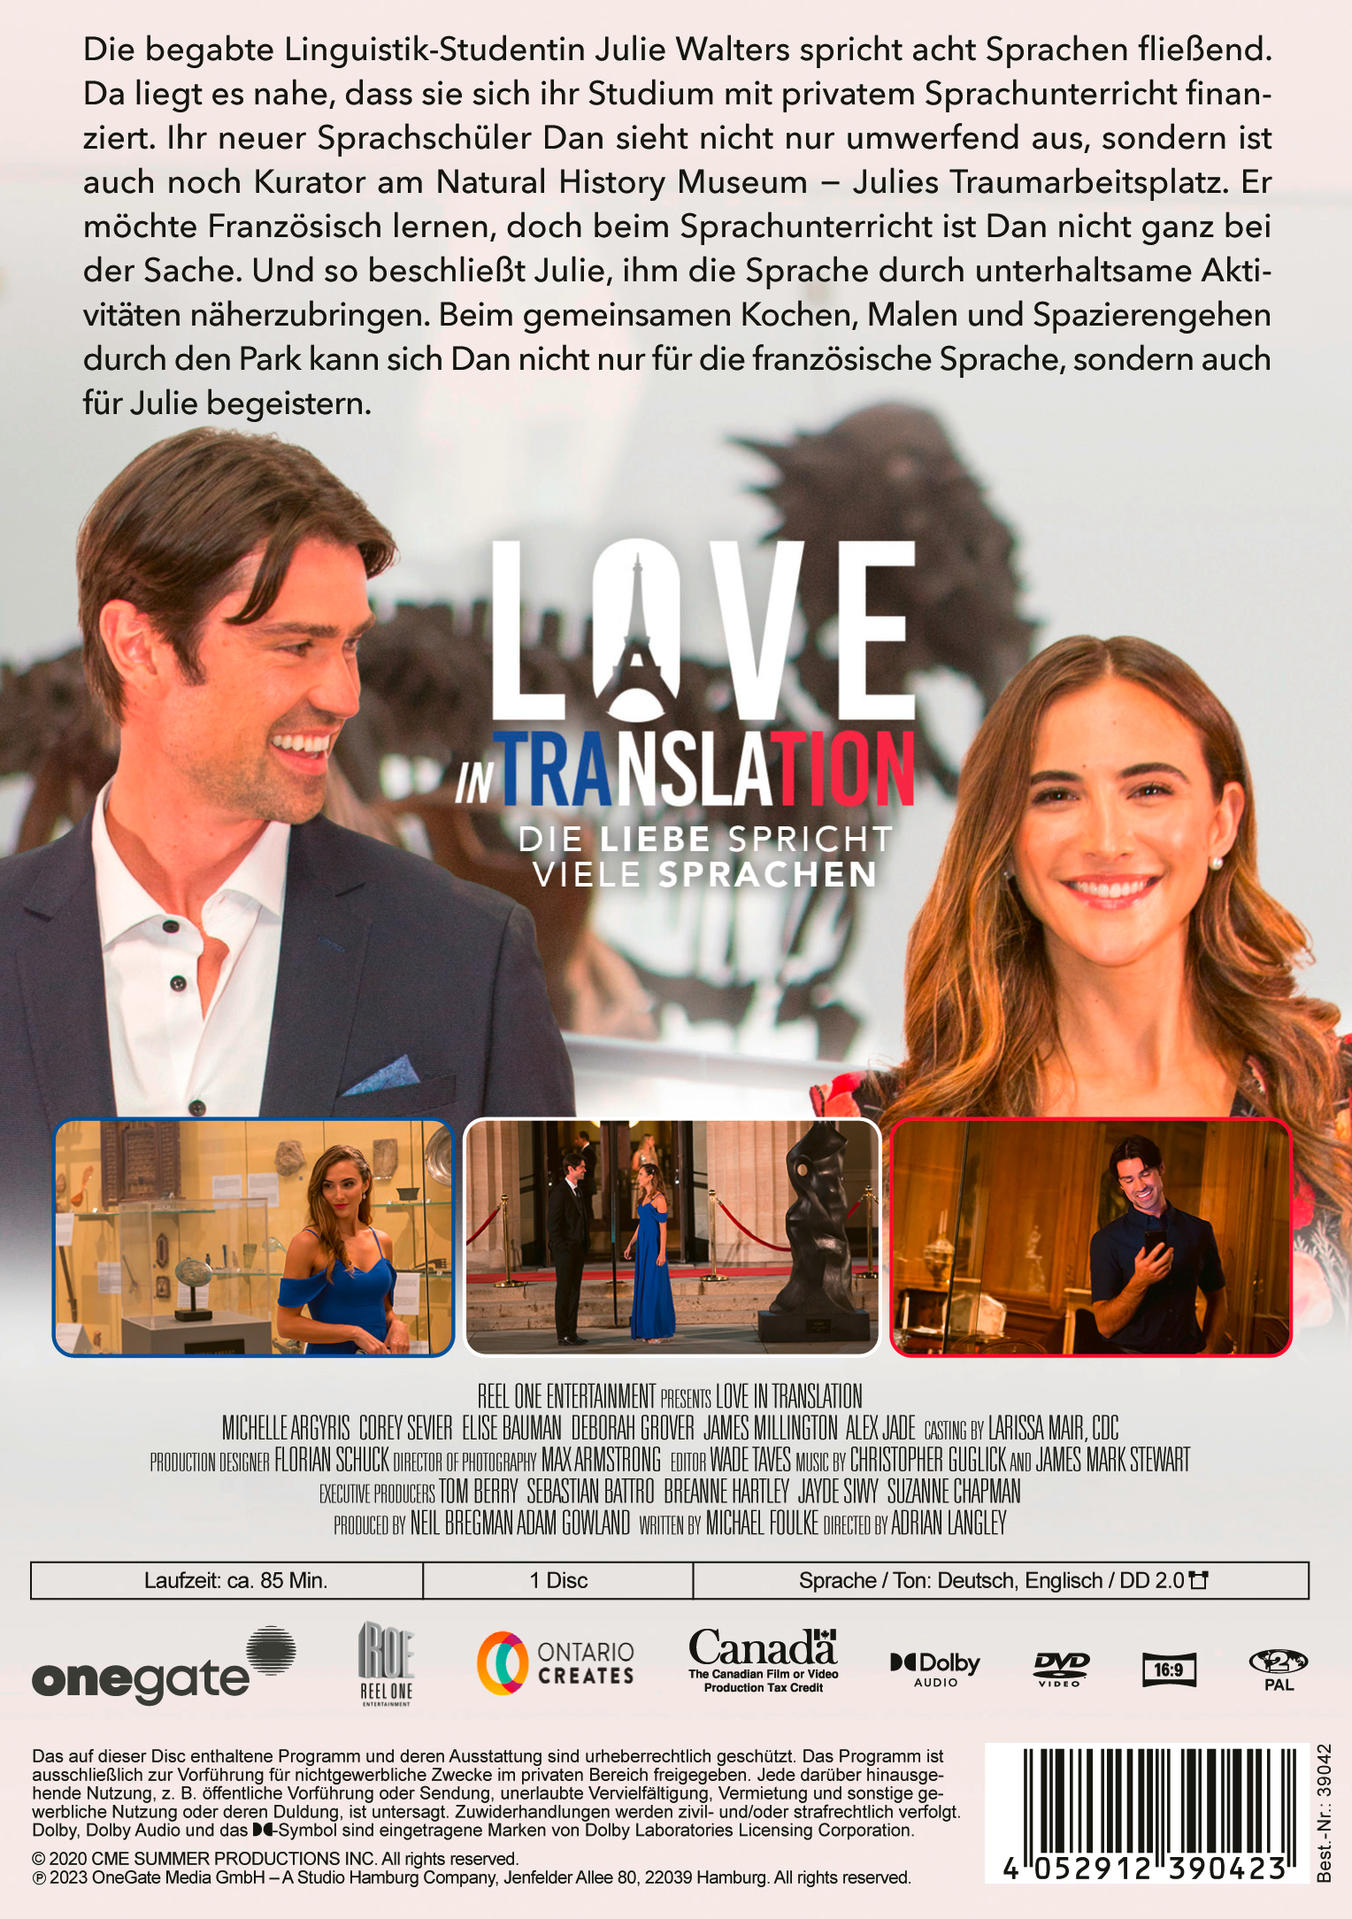 DVD Die viele Sprachen Translation In Liebe - spricht Love